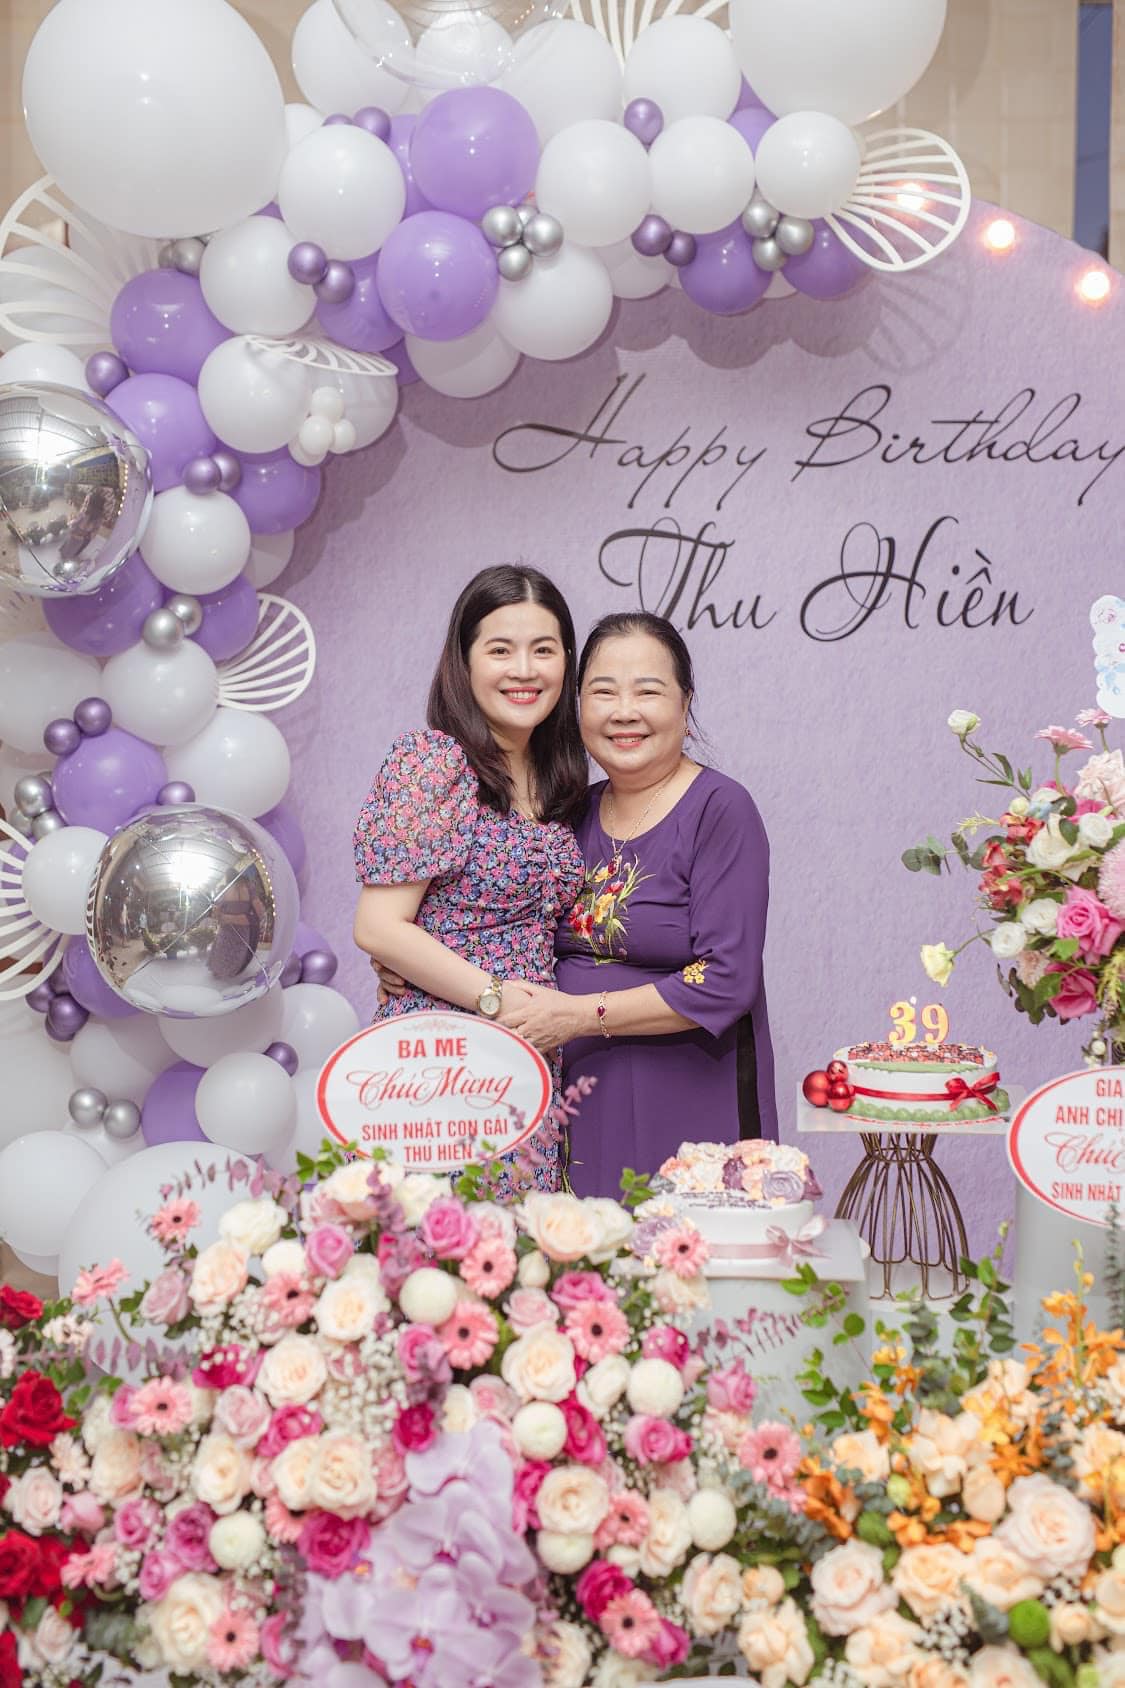 Trang trí sinh nhật cho mẹ tại Hà Nội - Chill decor